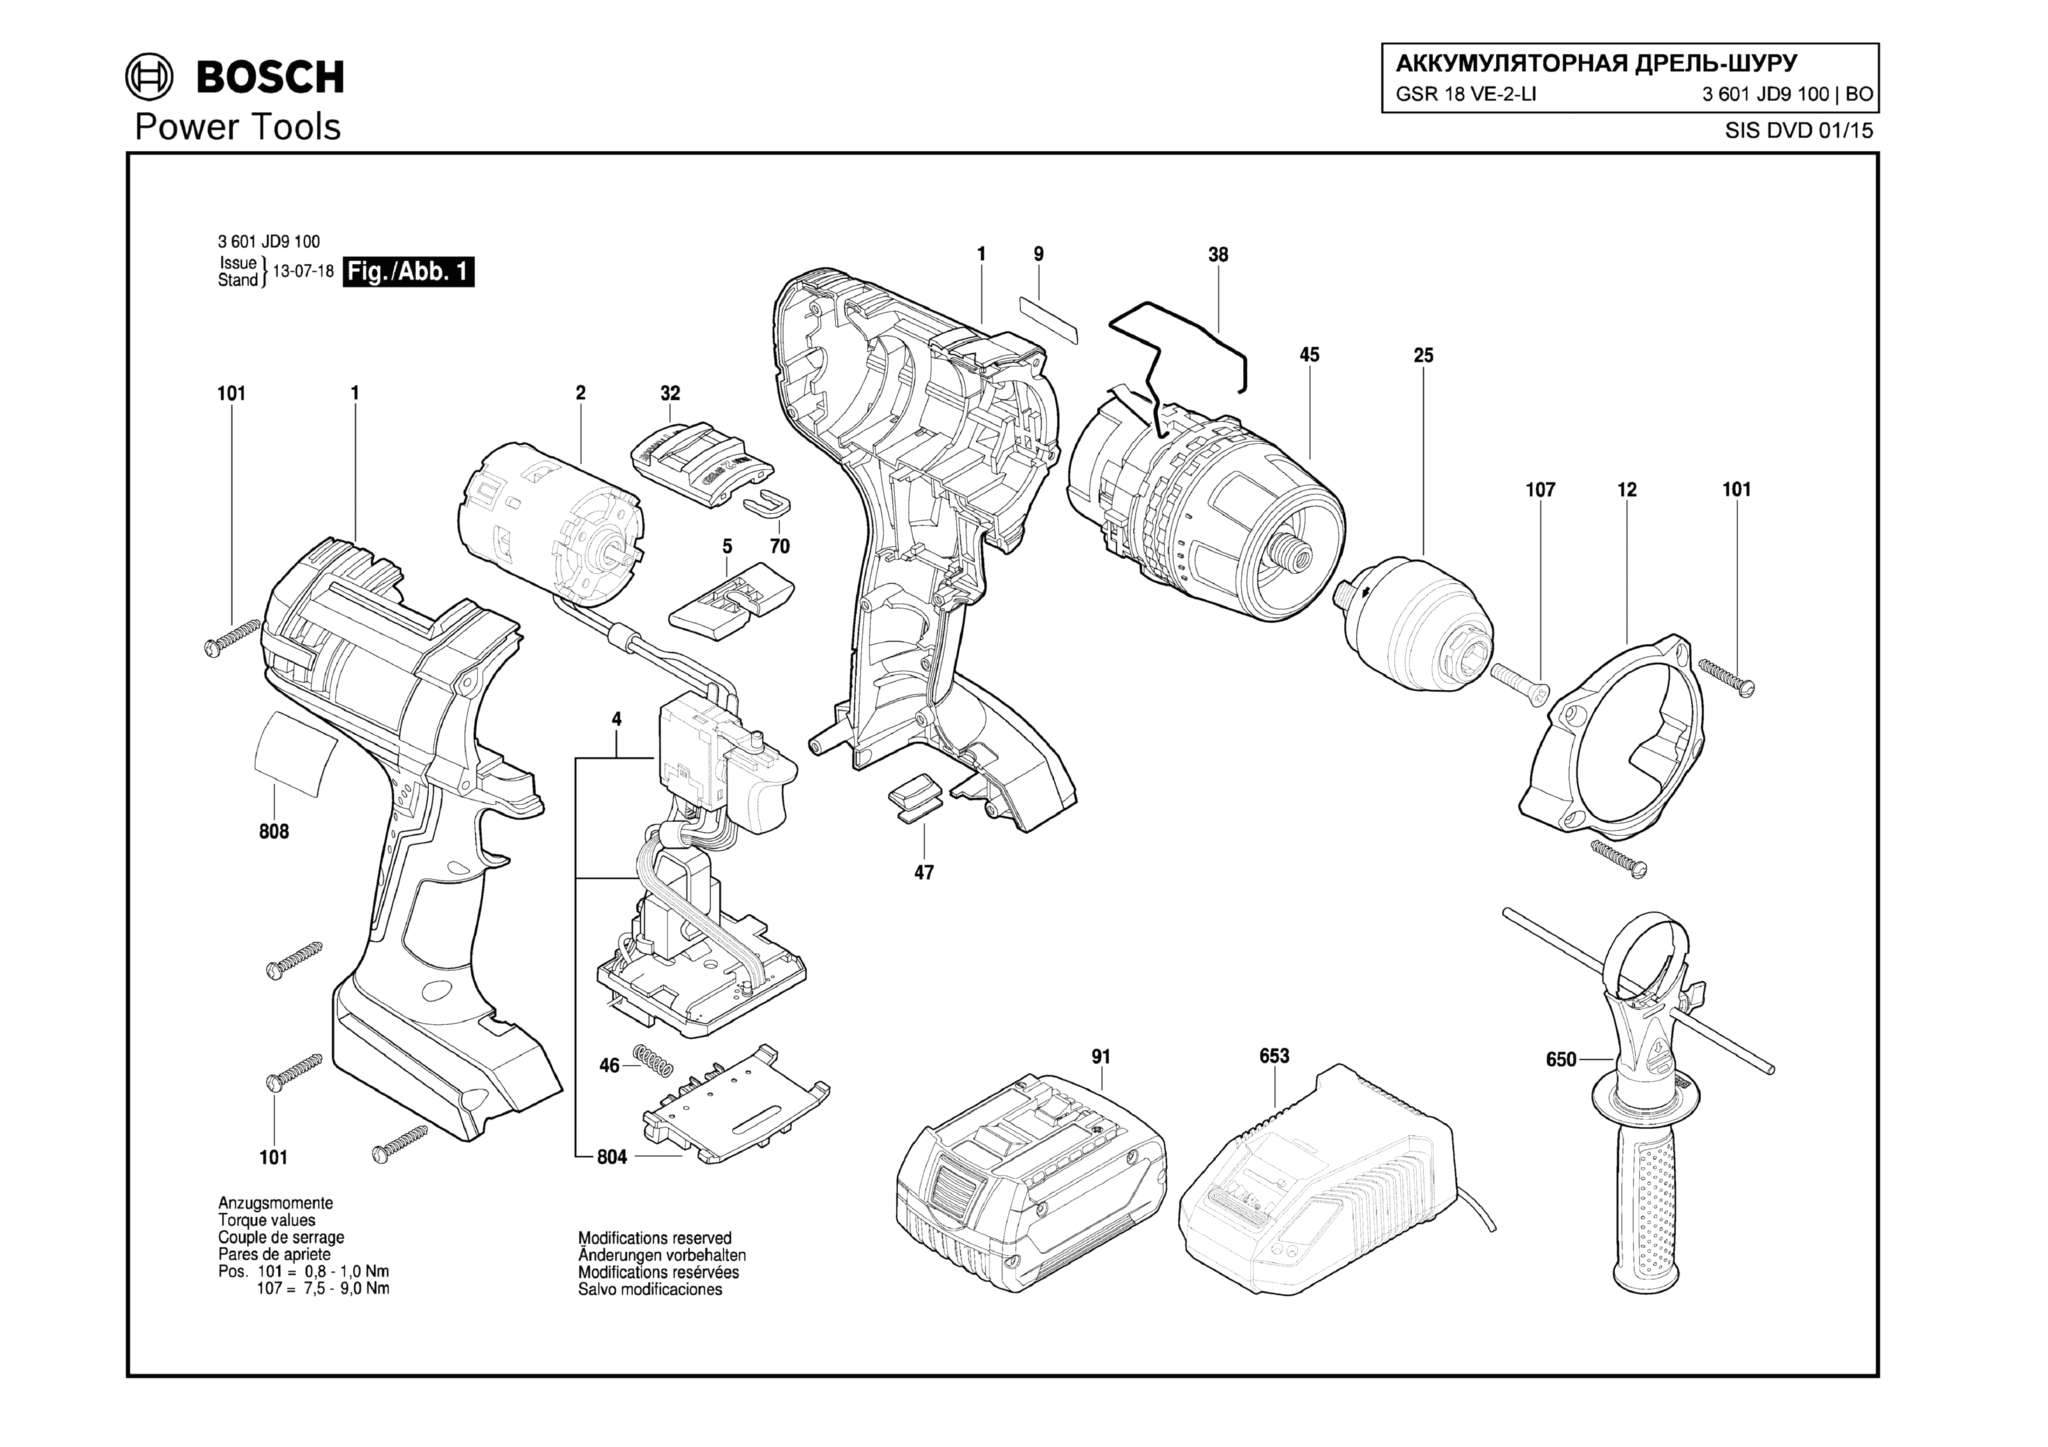 Запчасти, схема и деталировка Bosch GSR 18 VE-2-LI (ТИП 3601JD9100)